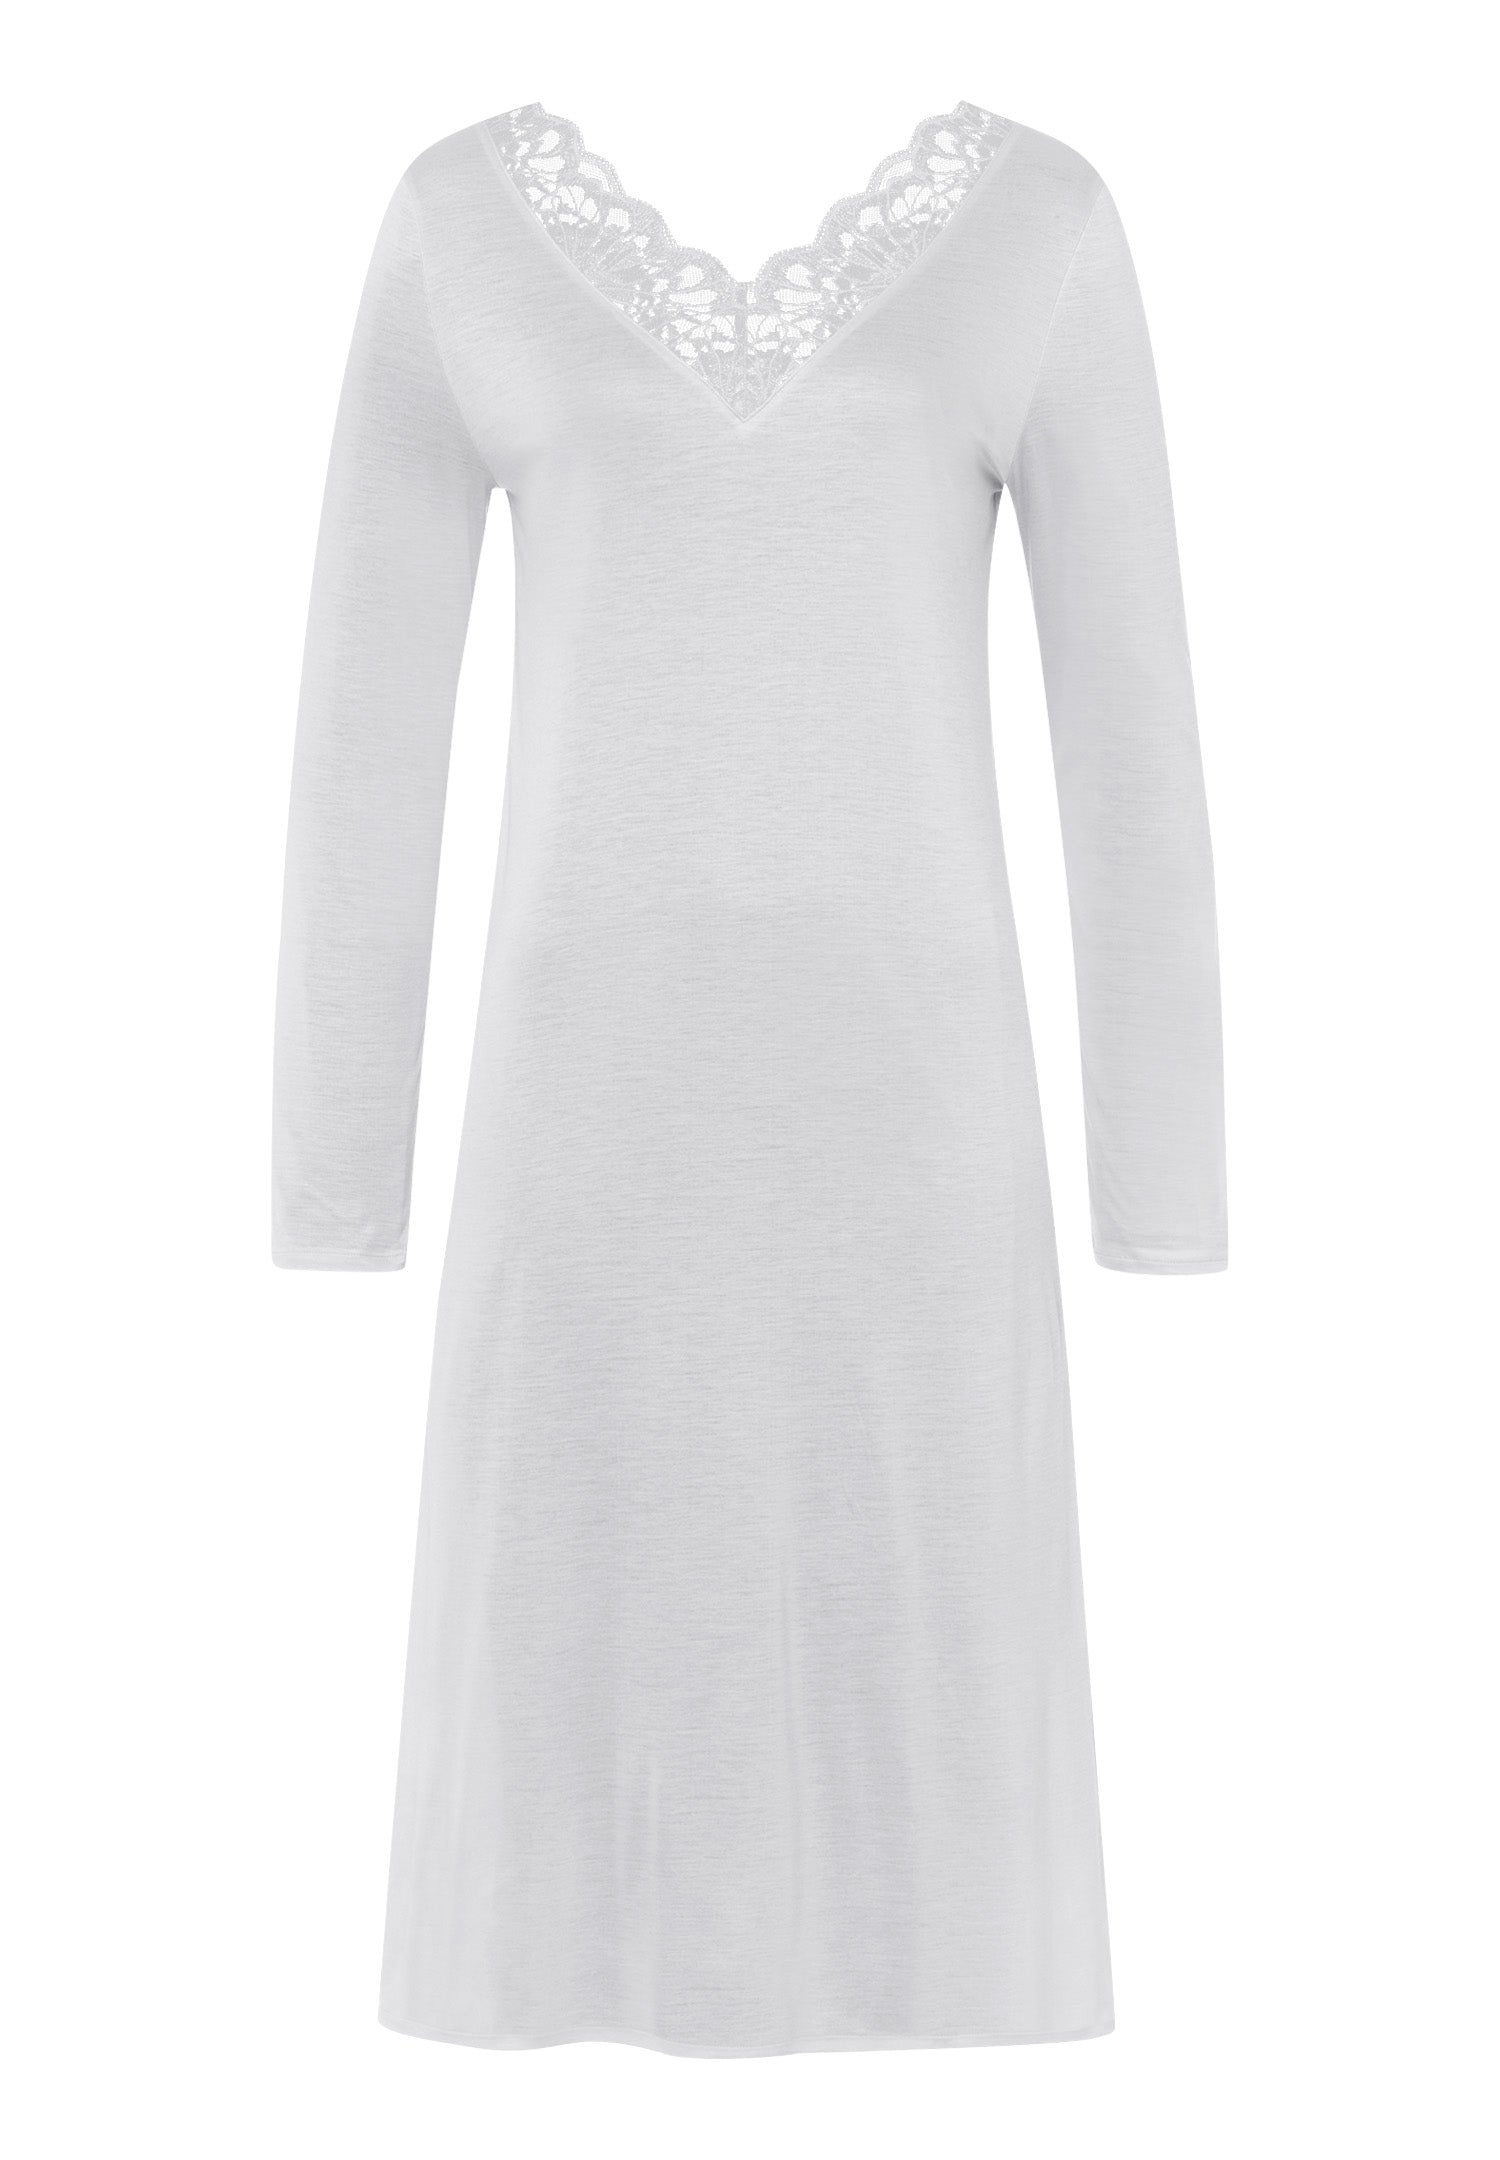 76233 Mae Long Sleeve Nightgown - 2654 Silver Grey